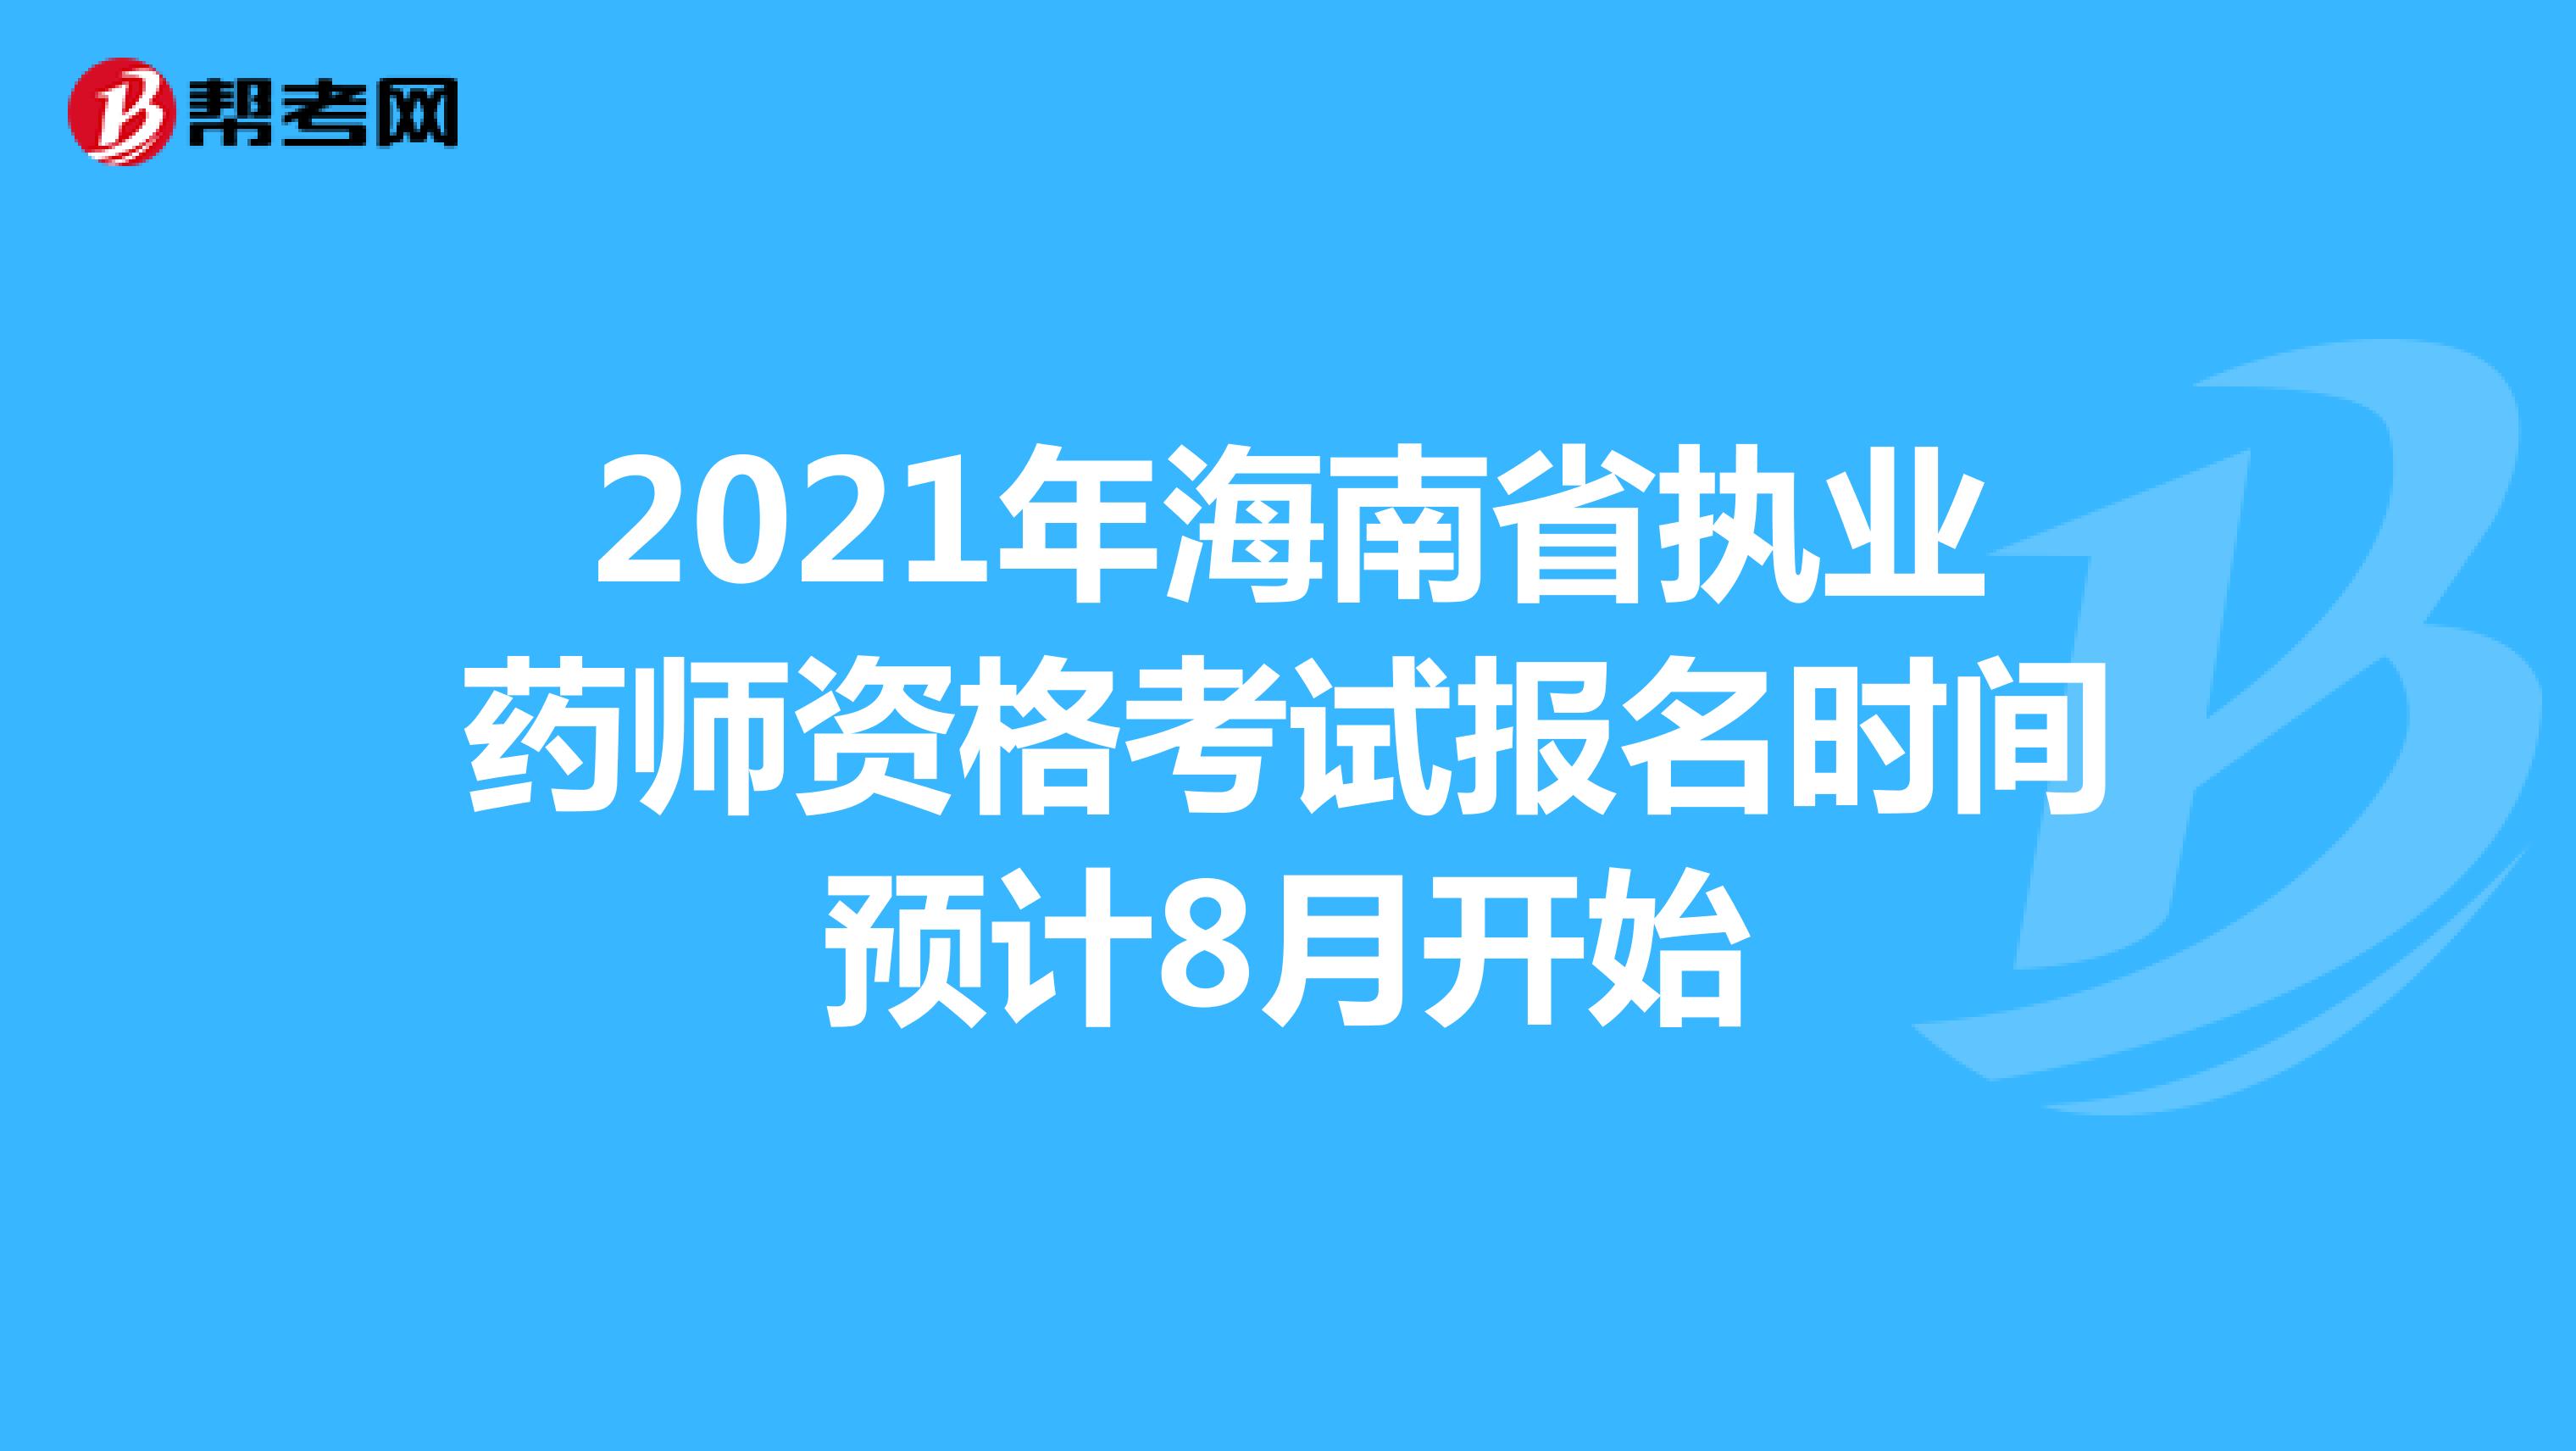 2021年海南省执业药师资格考试报名时间预计8月开始